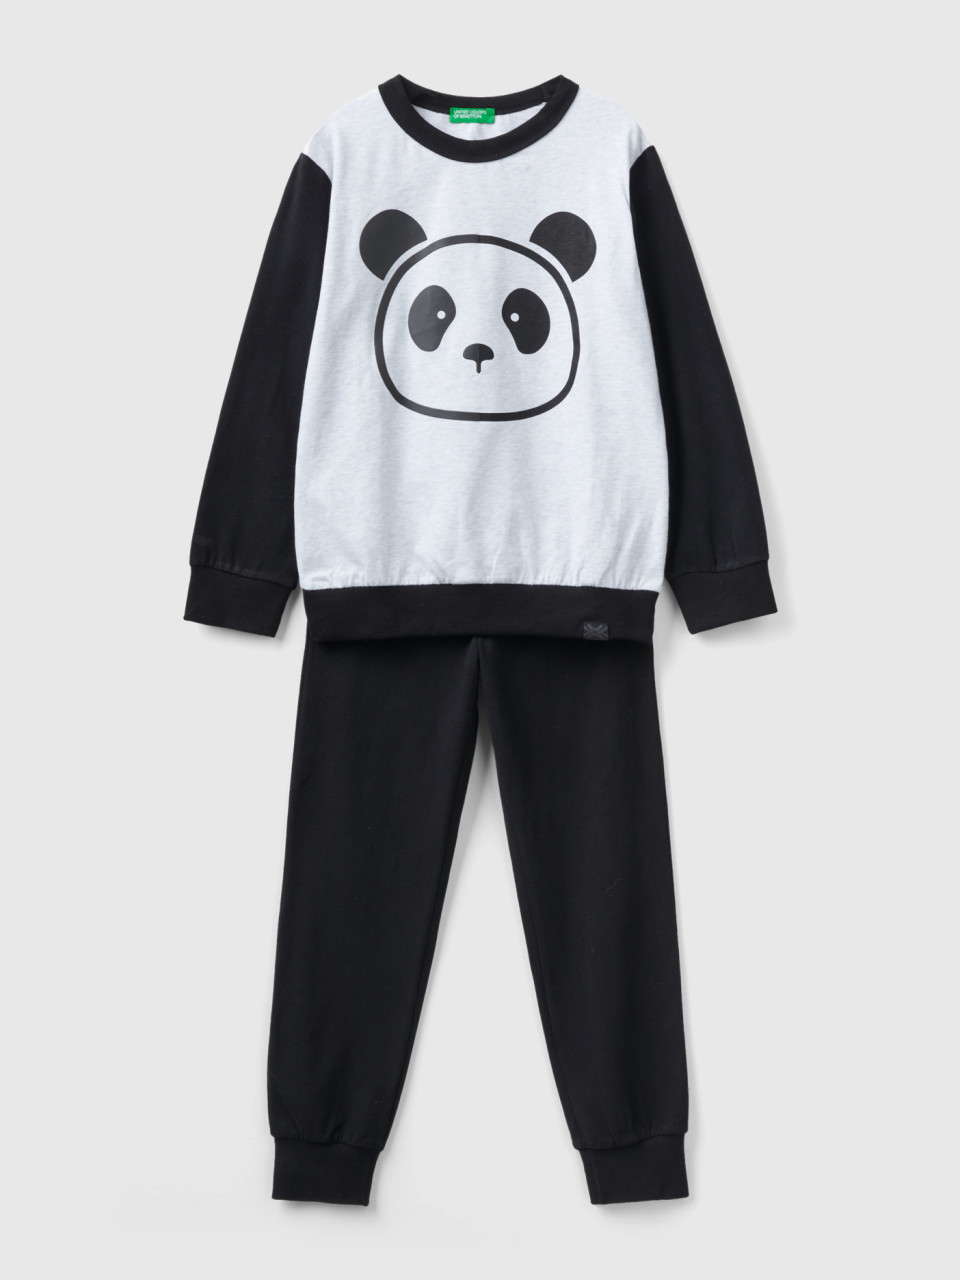 Benetton, Warm Pyjamas With Panda Print, Multi-color, Kids